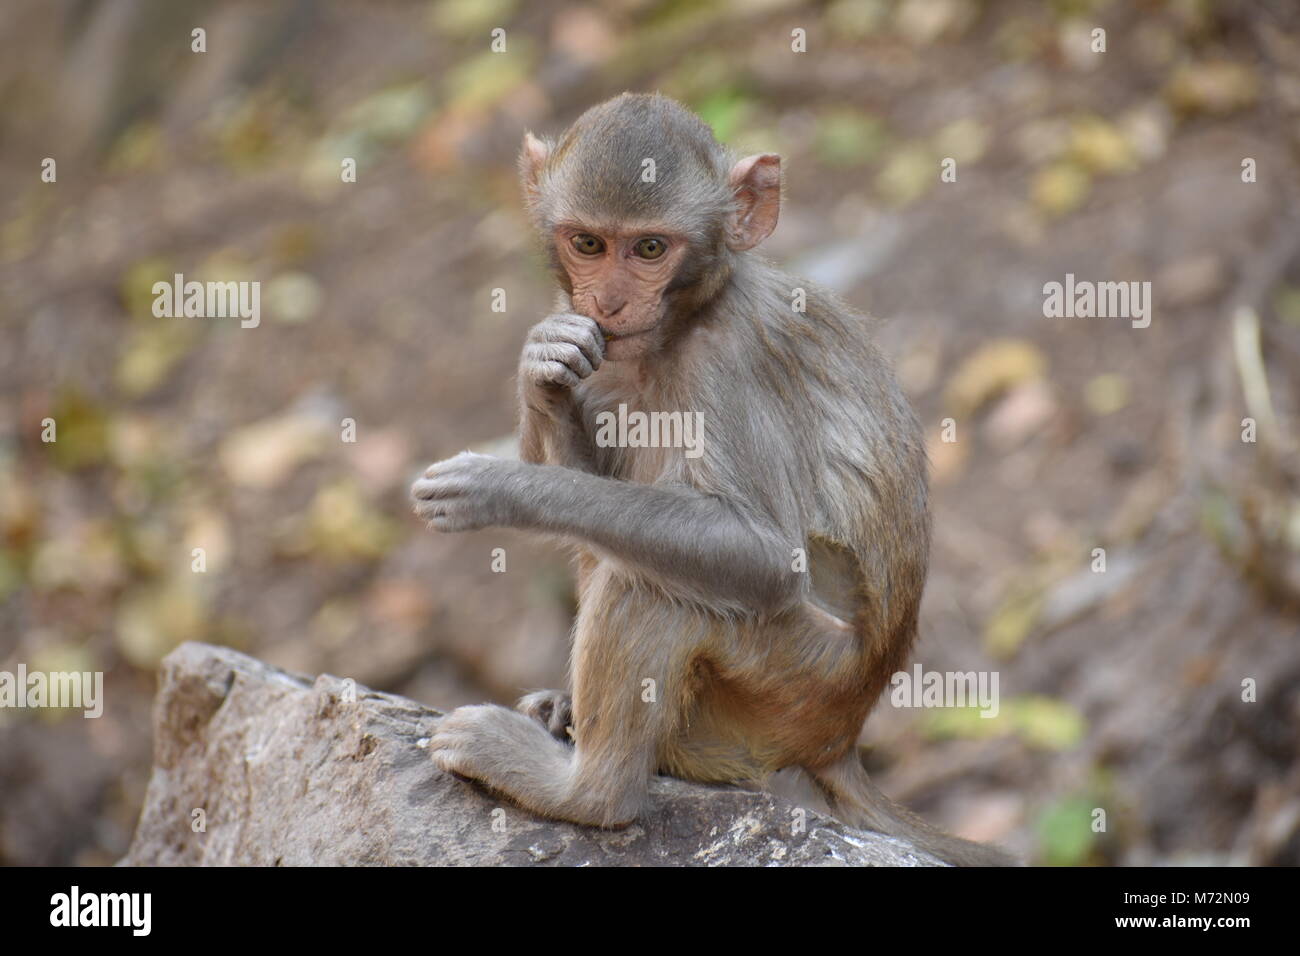 Super Snap von kleinen Affe, sitzt auf einem Stein & halten Sie sich selbst, indem sie kleine Tätigkeiten wie Essen Essen beschäftigt, siehe um ihn herum. Stockfoto